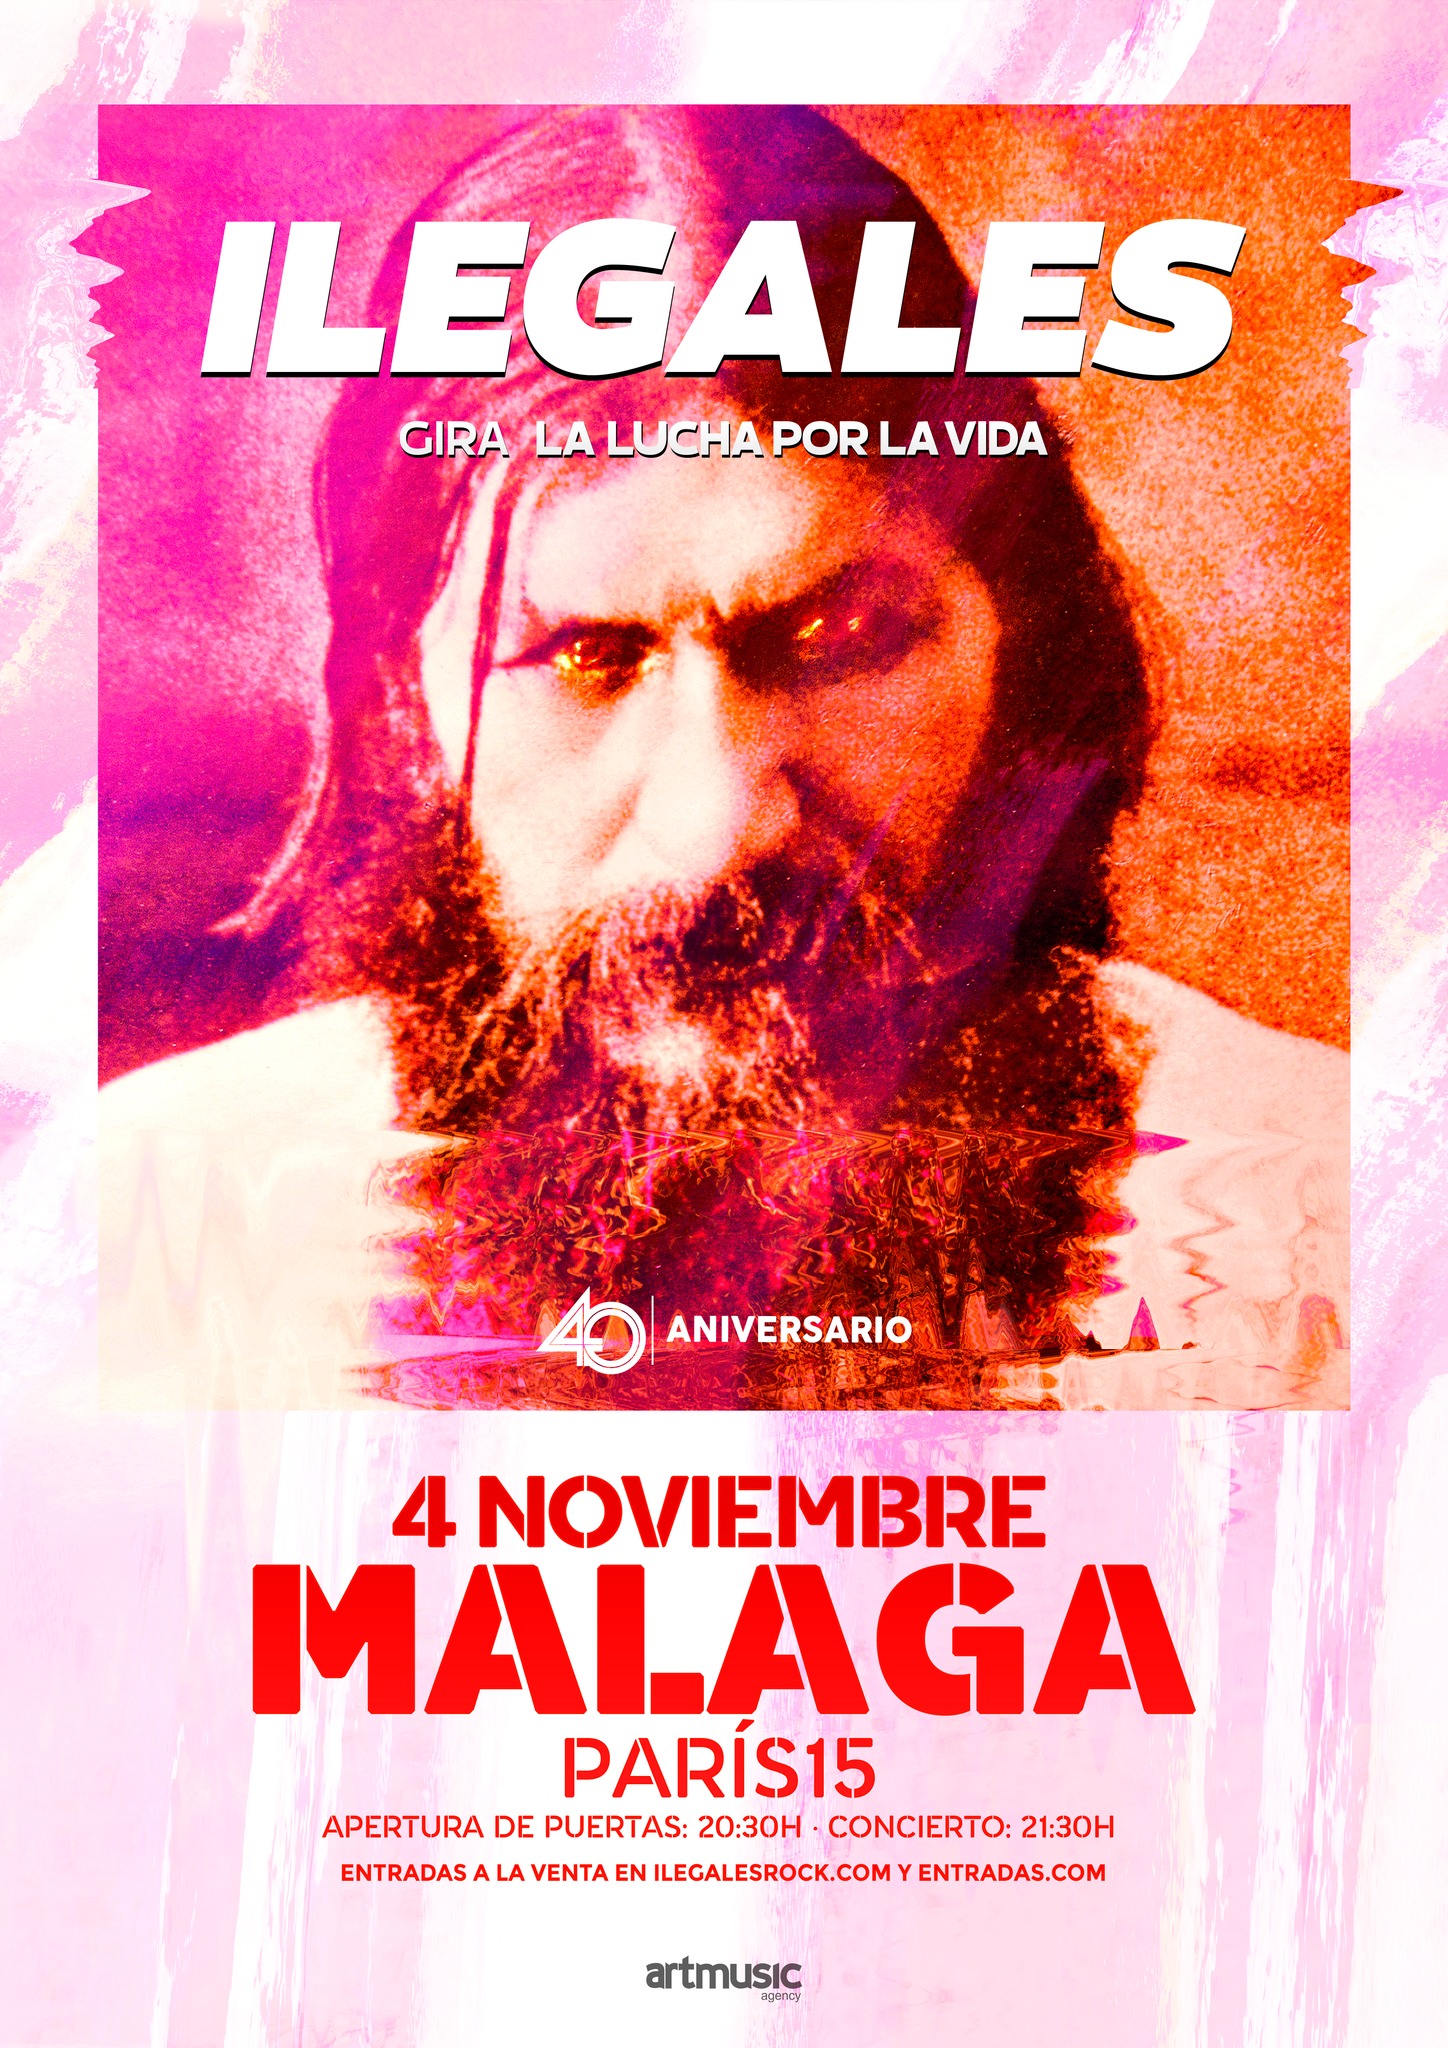 Ilegales estarán actuando en Málaga el 4 de noviembre